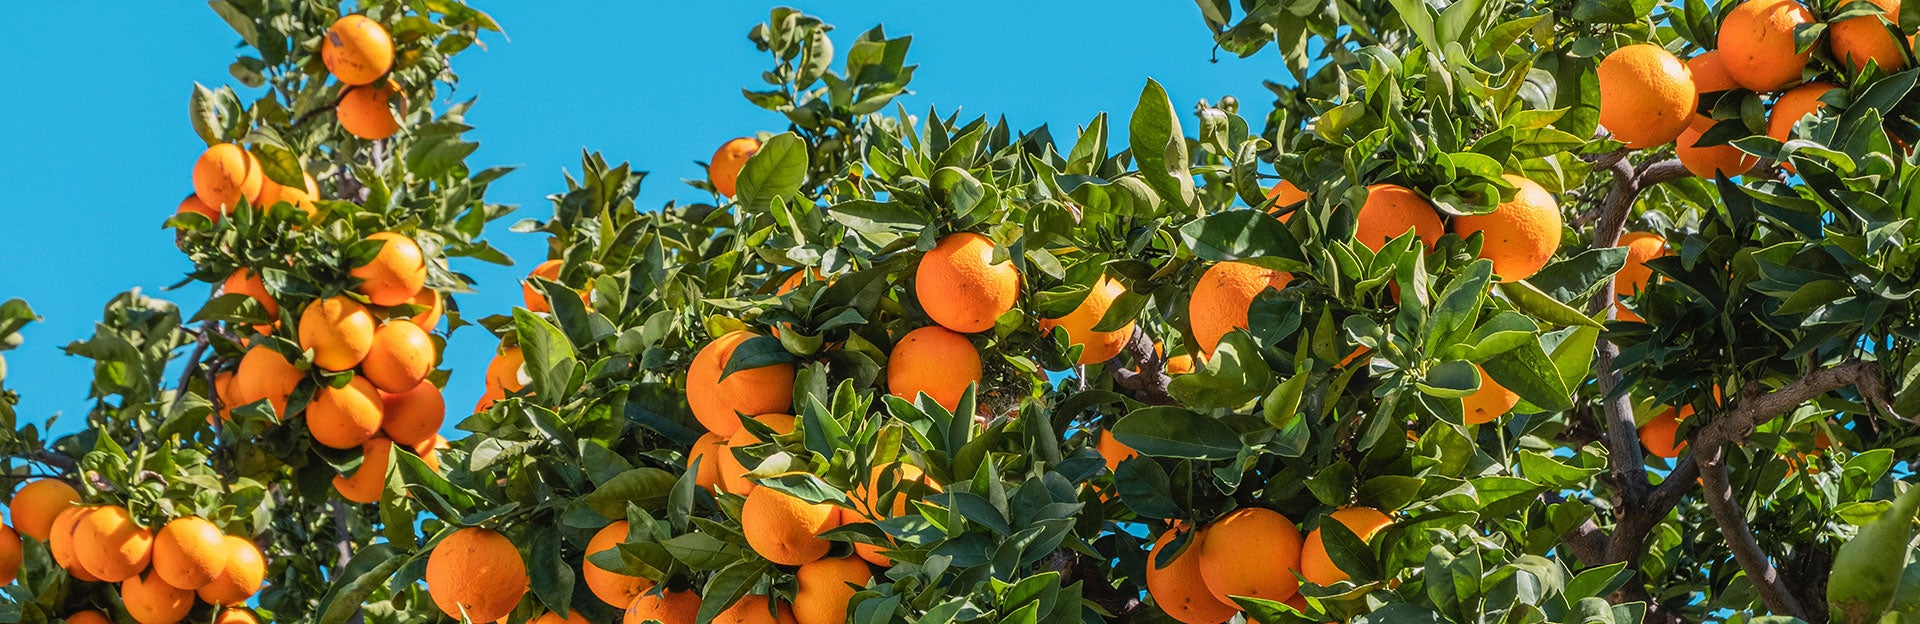 oranges on a citrus tree (c) Philippe Gauthier unsplash